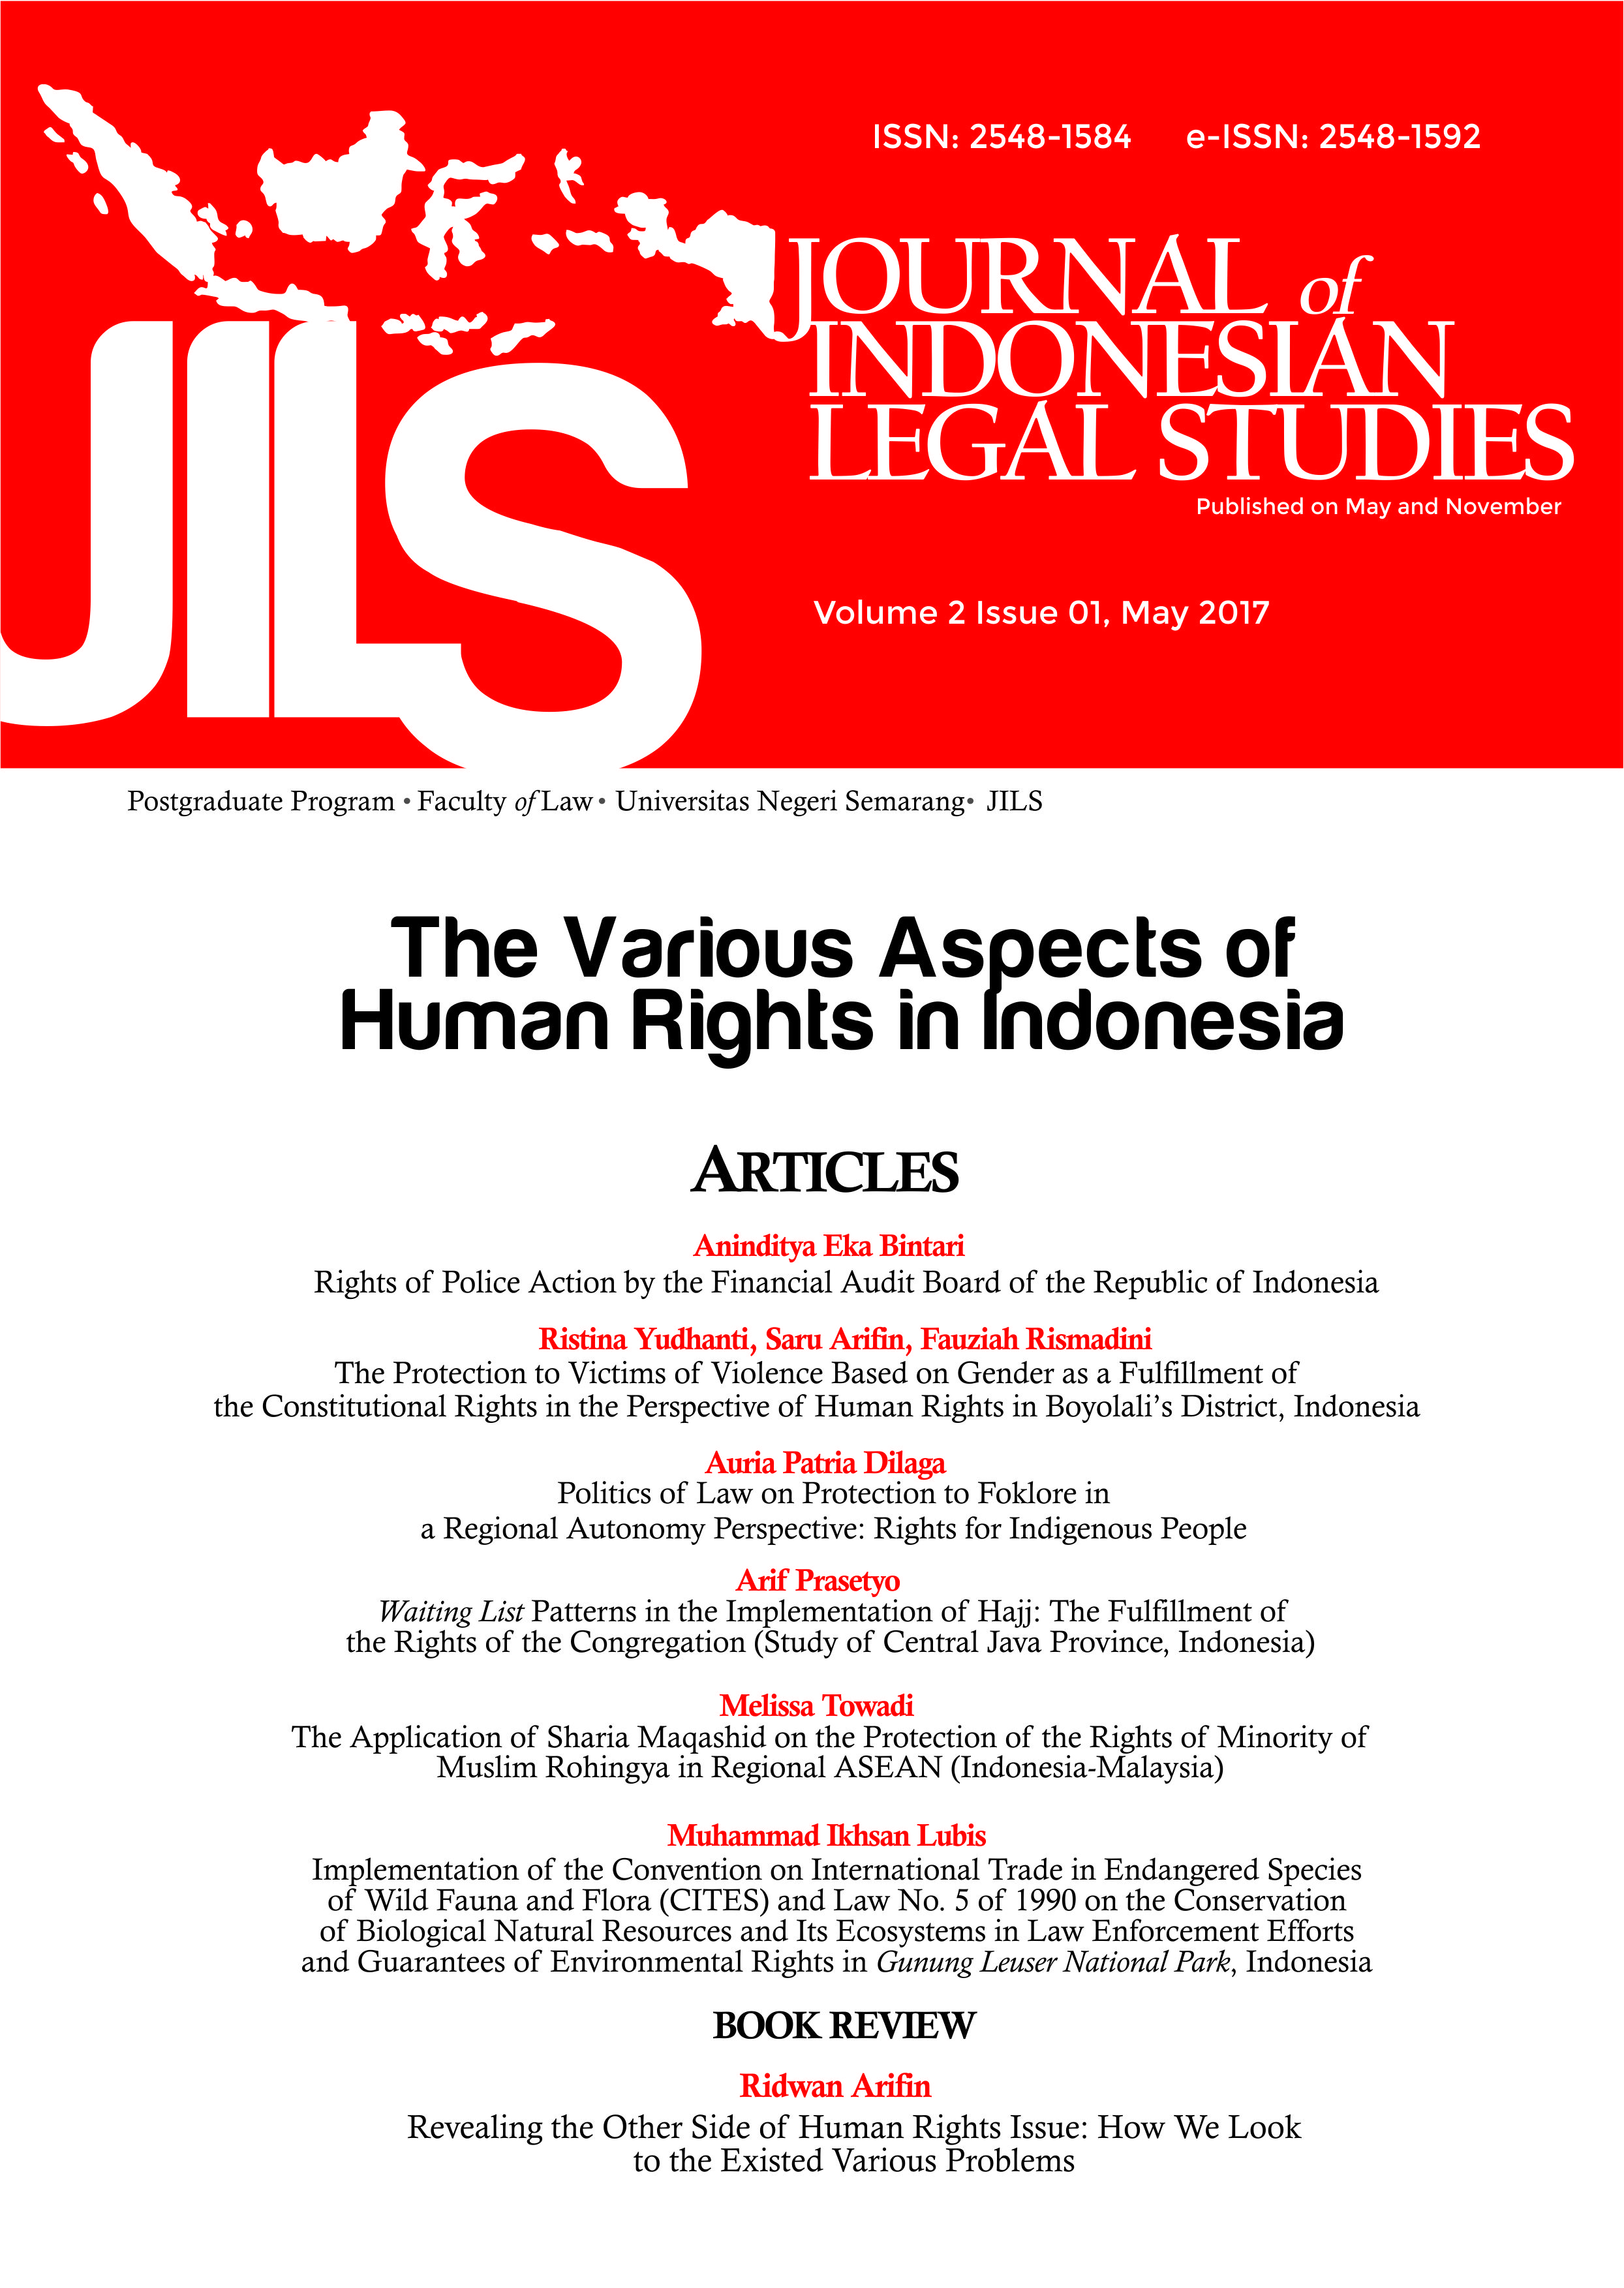 JILS, Indonesian Legal Studies, Human Rights